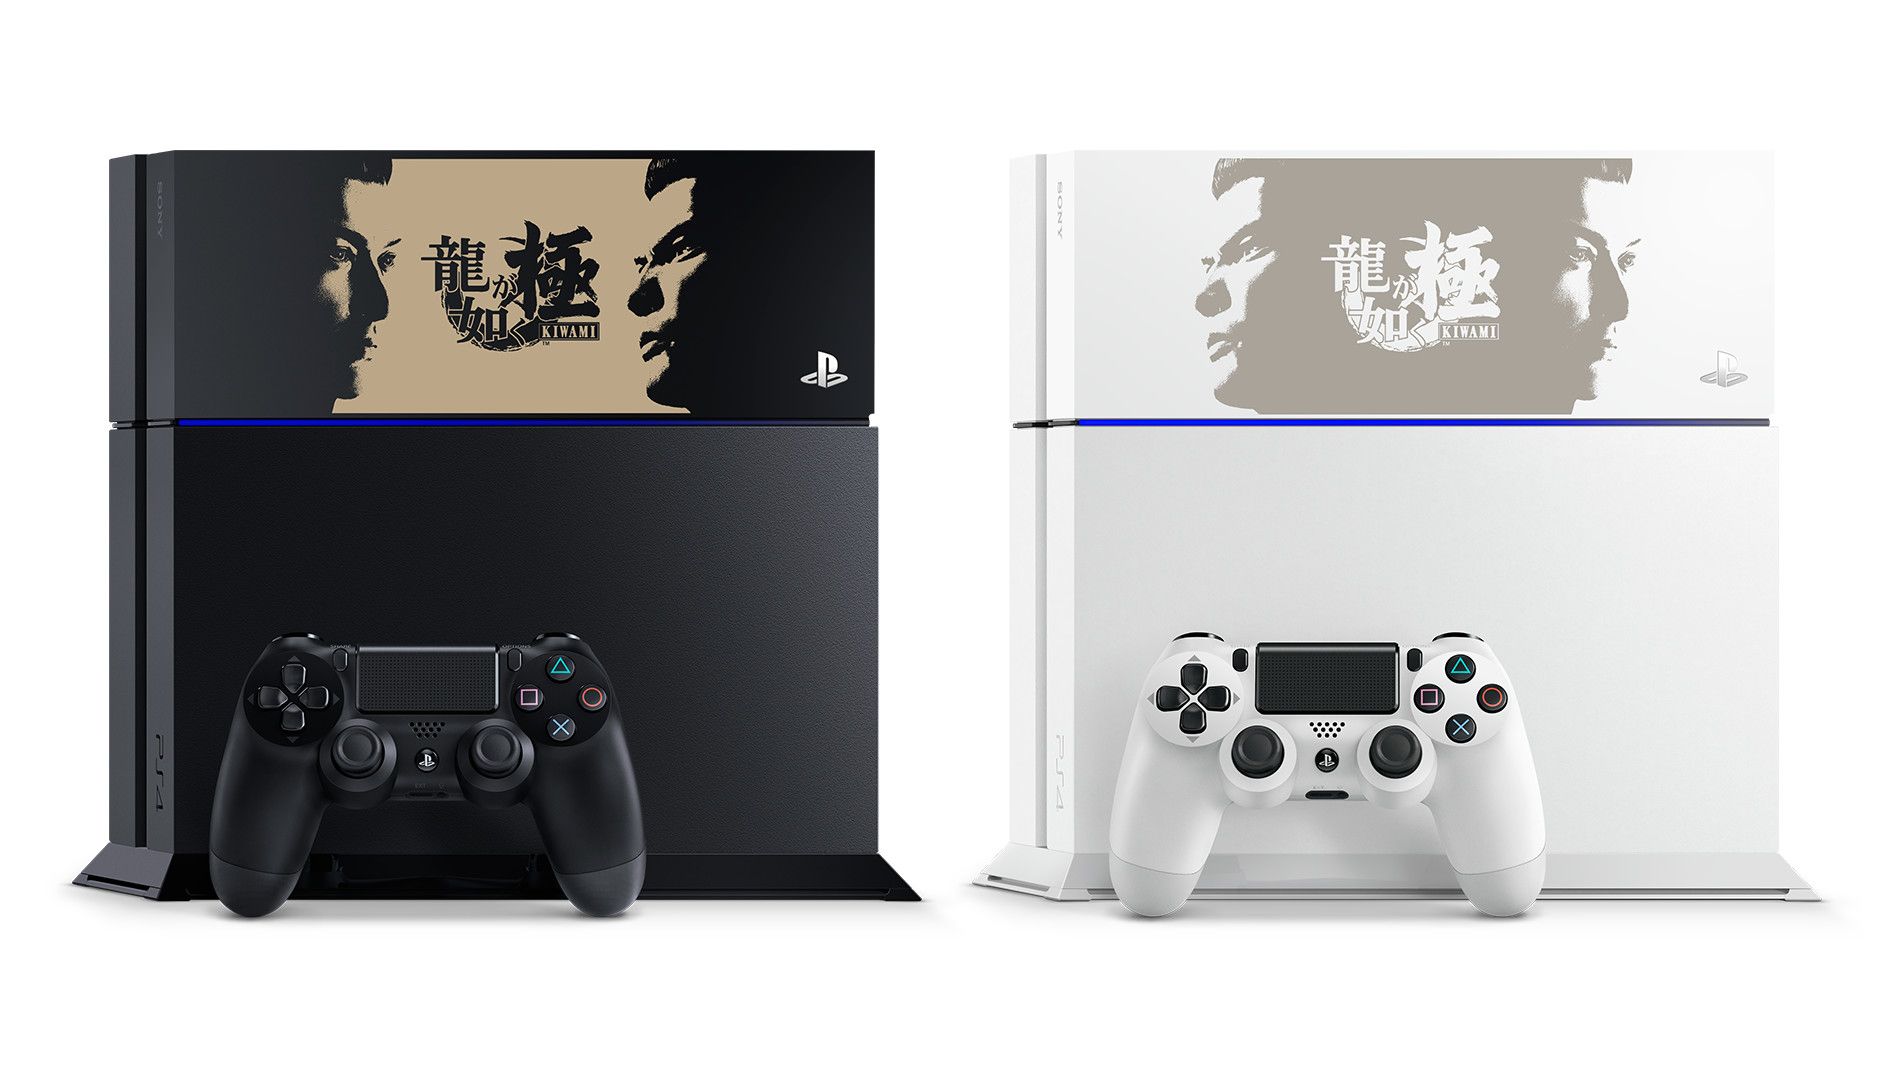 Yakuza Kiwami-Emblazoned PlayStation 4 Consoles Revealed for Japan